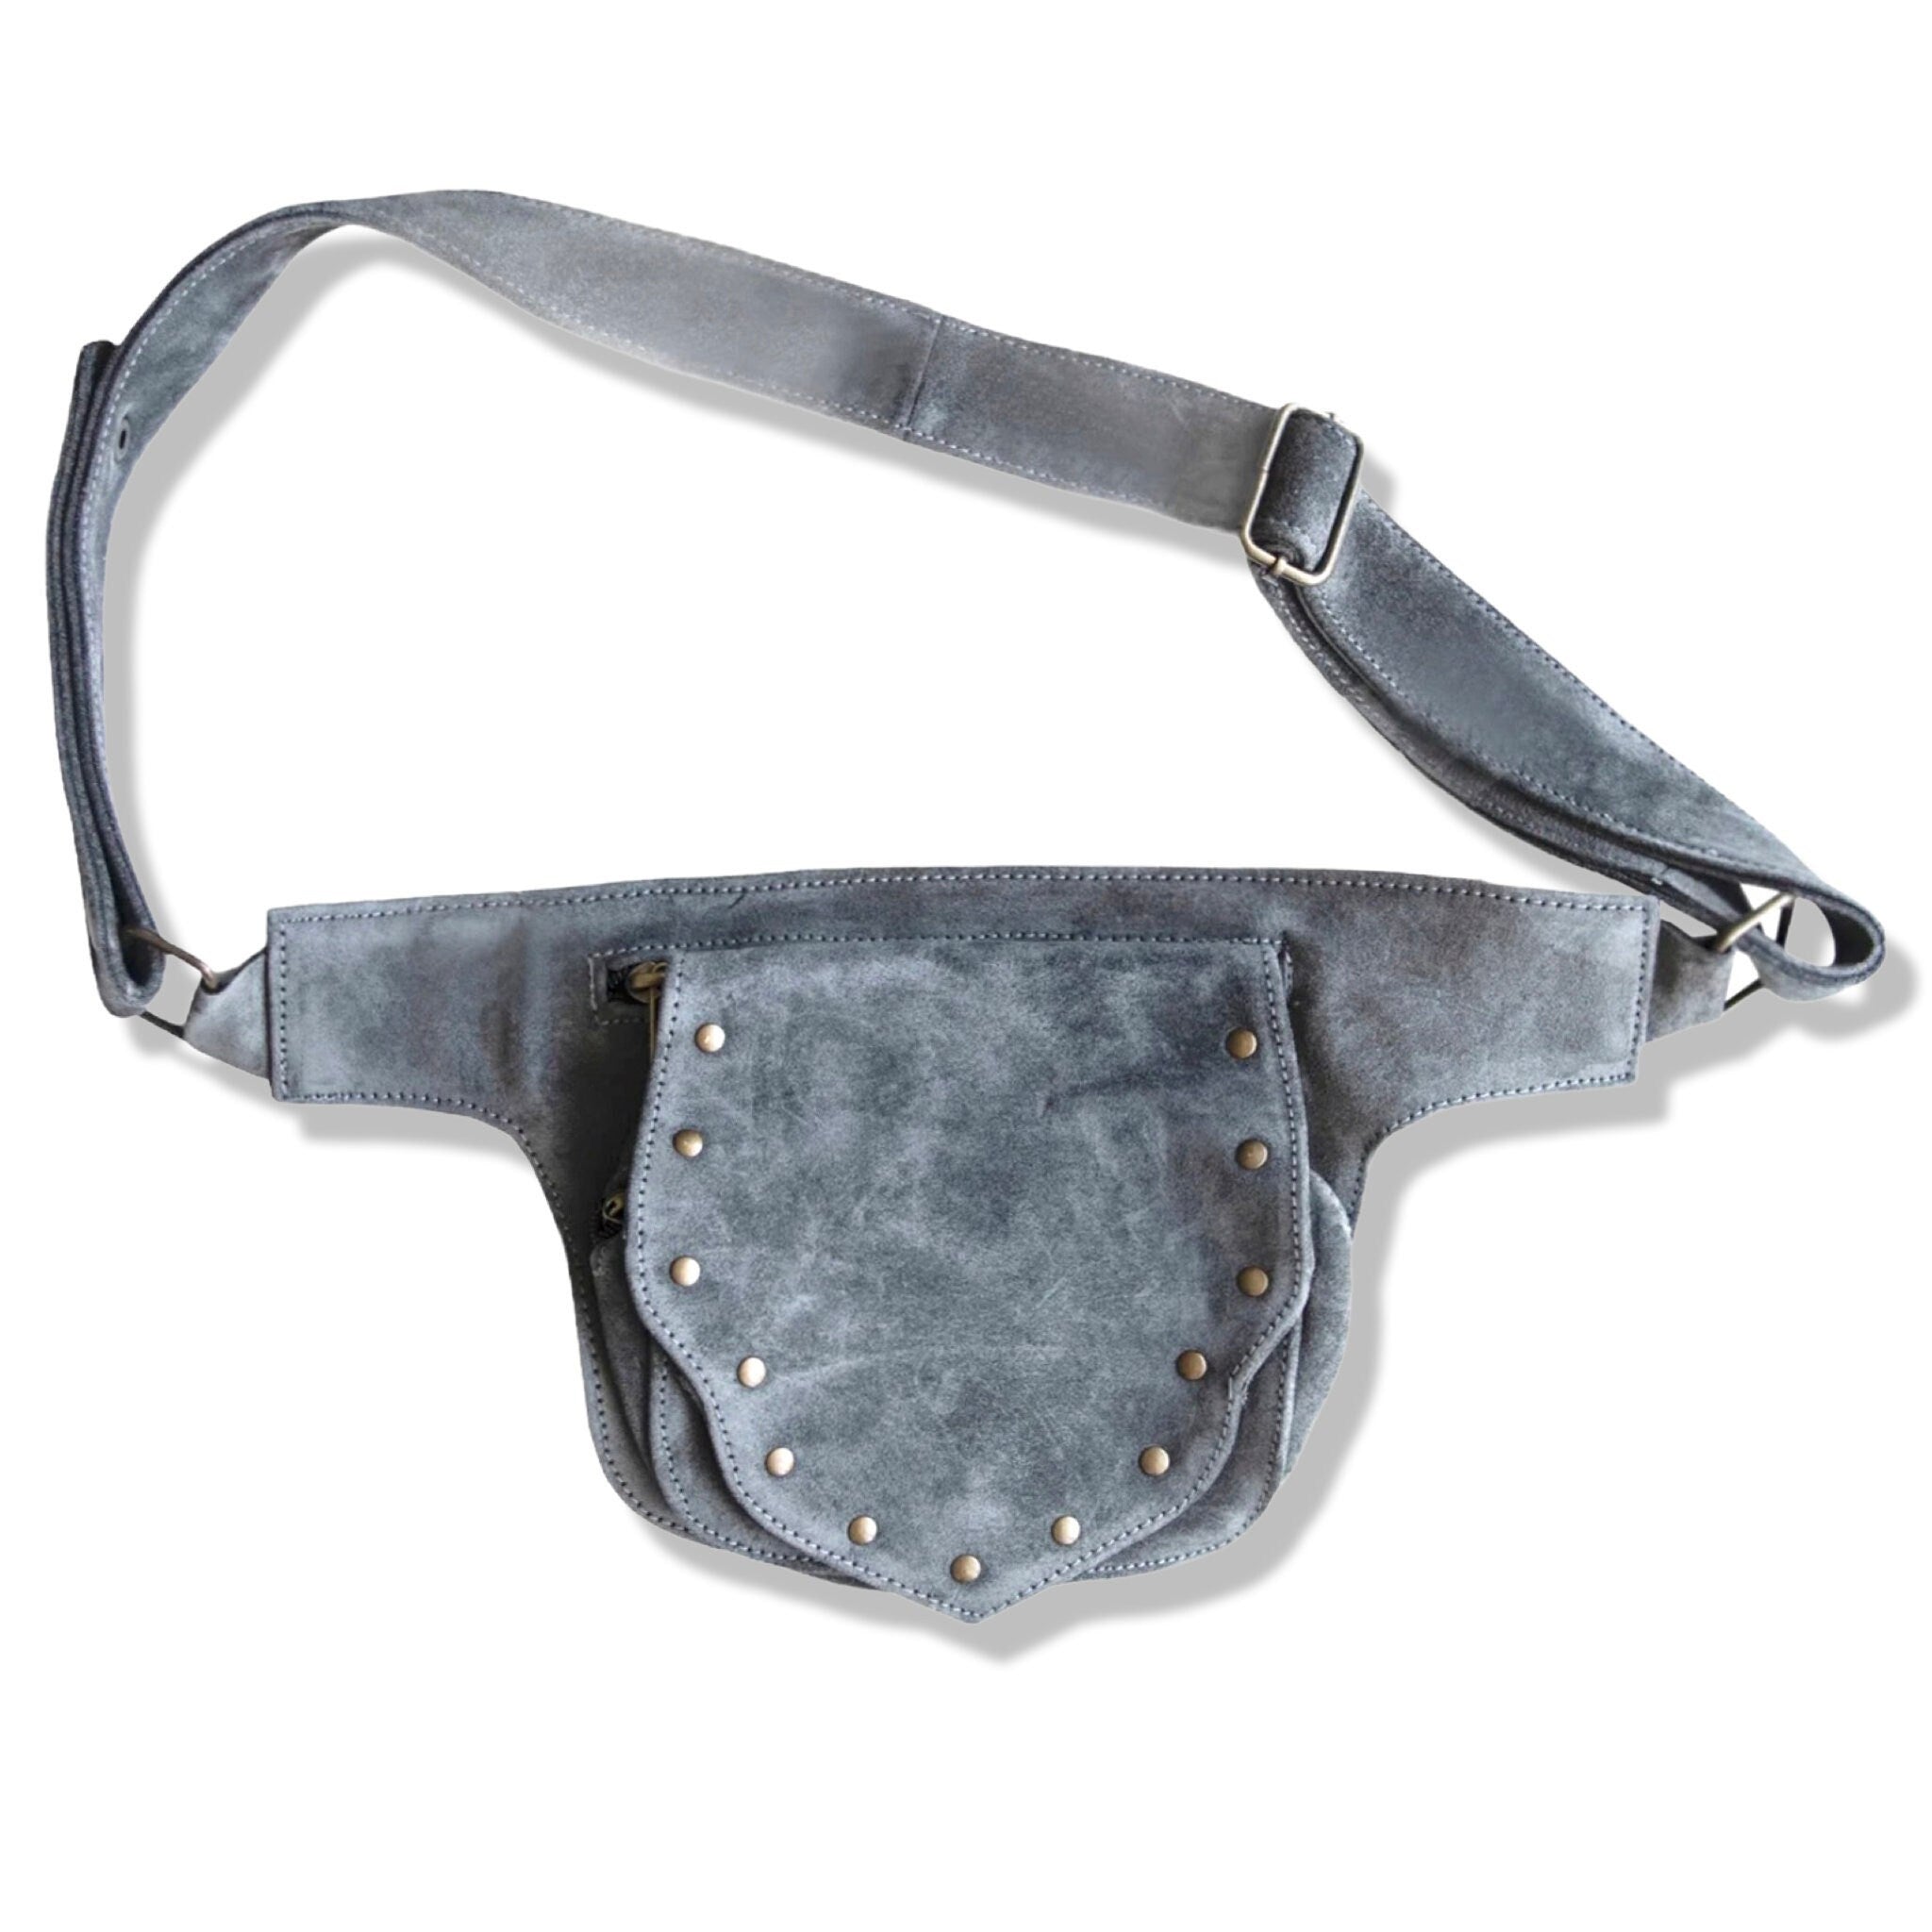 Leather Utility Pocket Belt | Grey Suede | travel belt, fanny pack, vendor belt, festival belt, burning man, ren fair, playa wear, dog